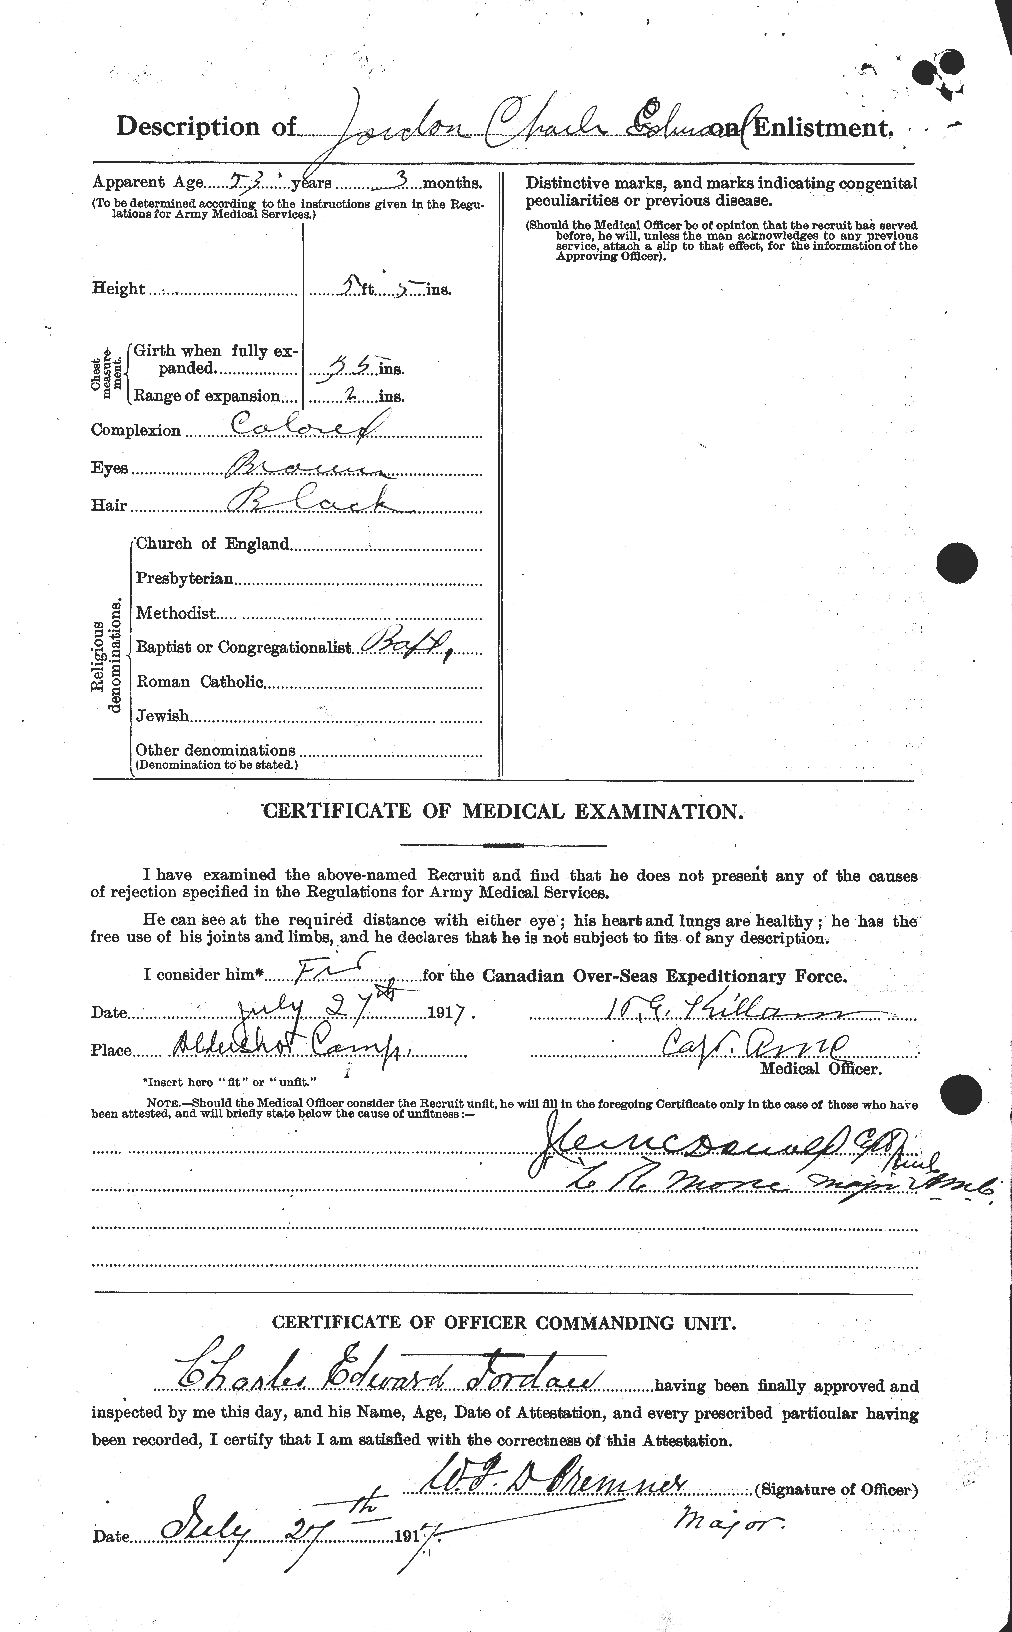 Dossiers du Personnel de la Première Guerre mondiale - CEC 424264b